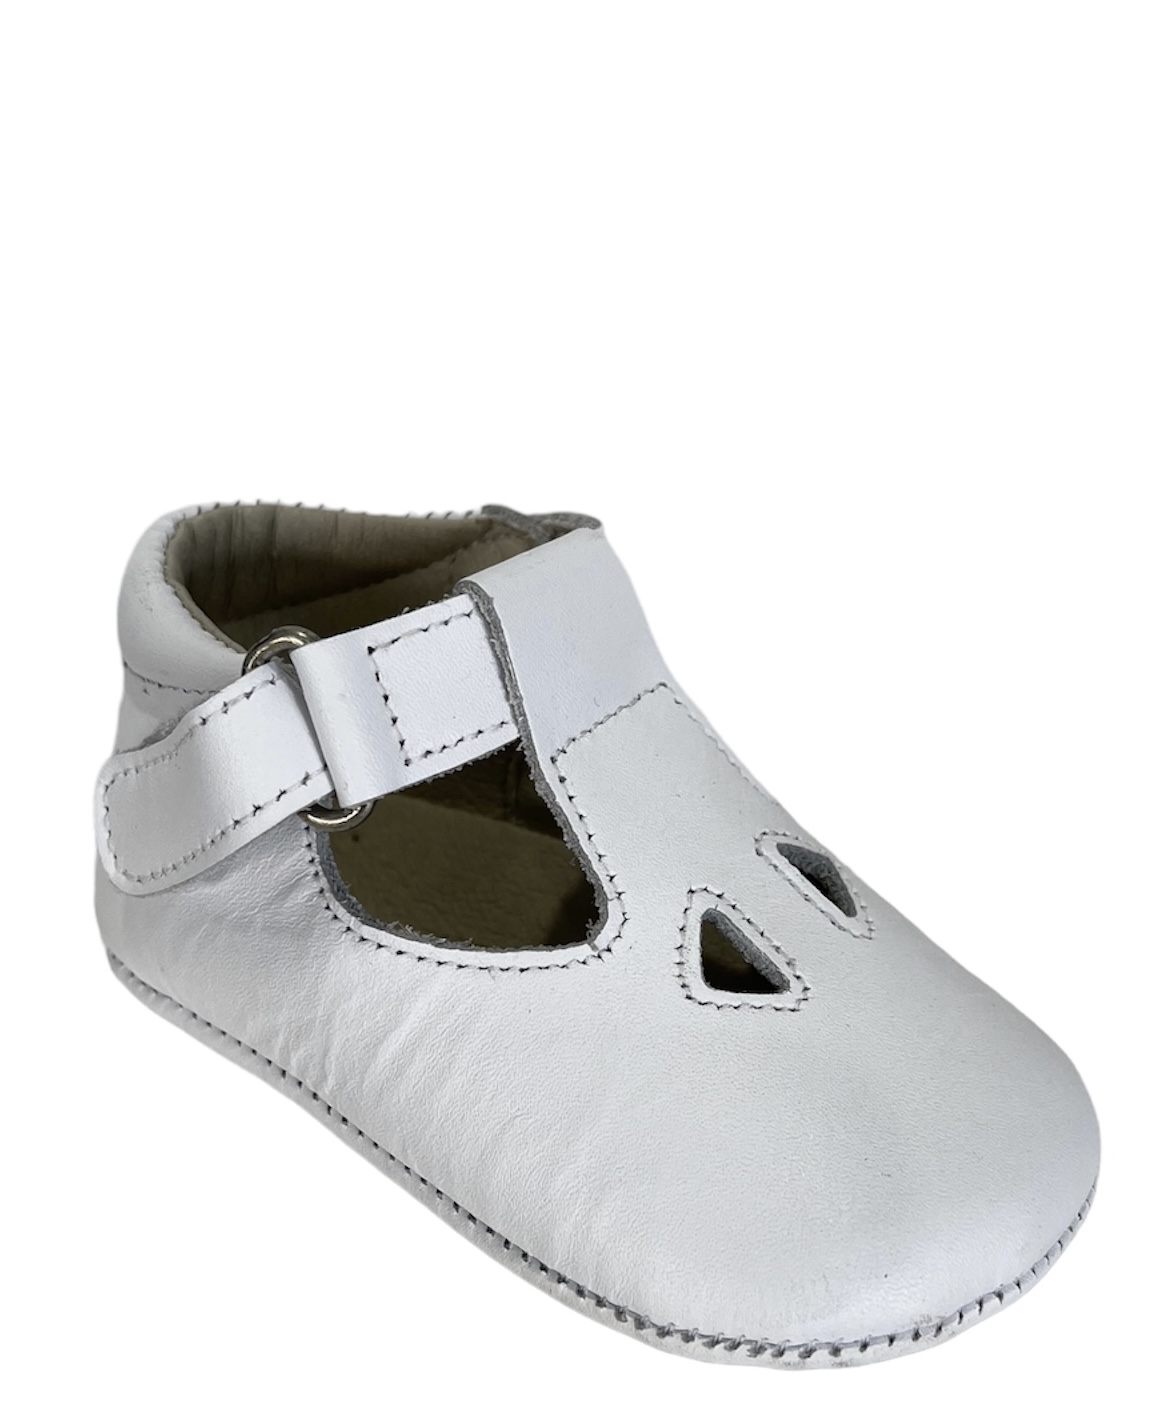 Zapato de bebé sin suela en piel blanco con velcro